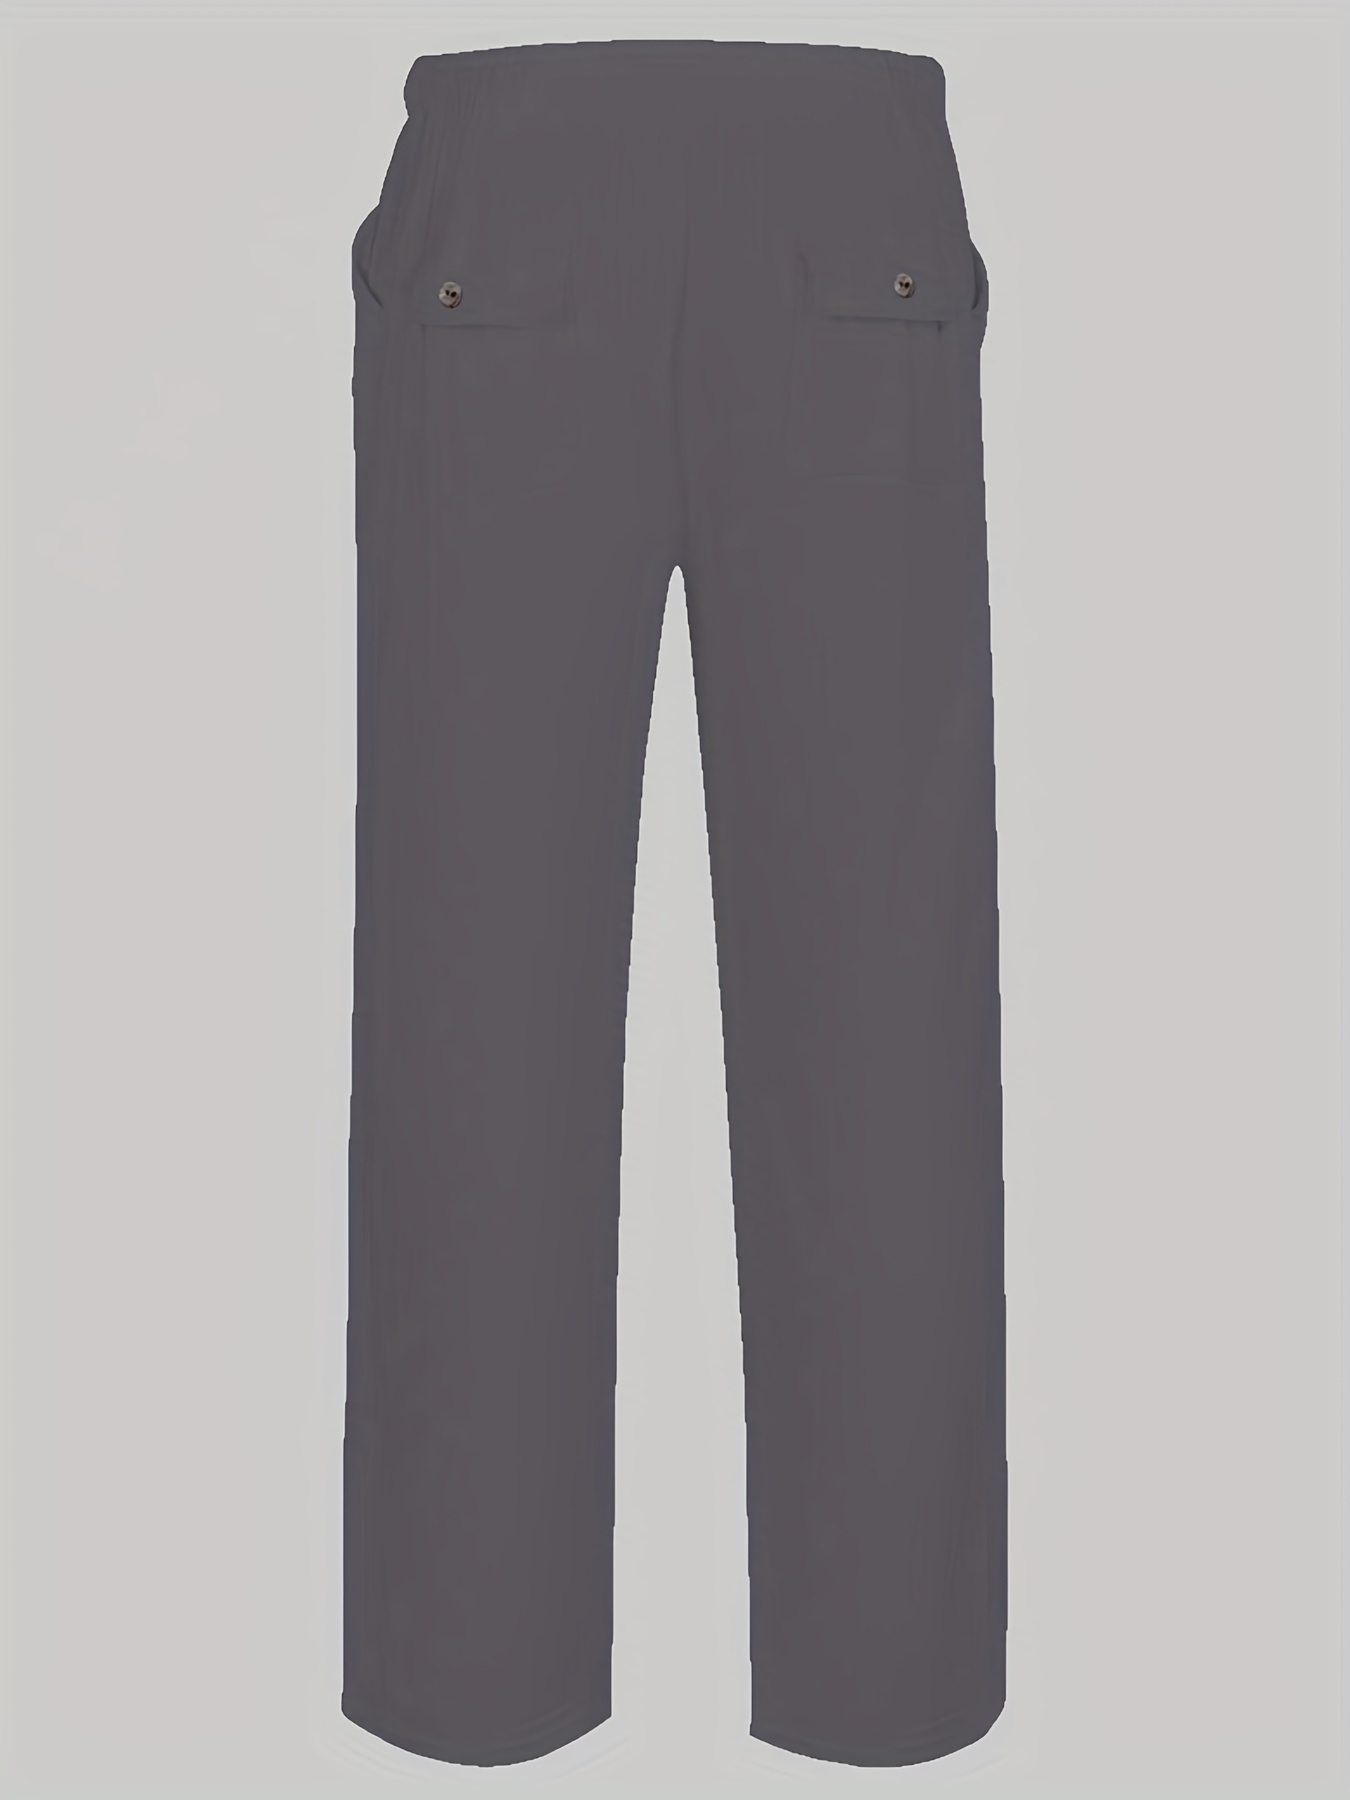 mens cotton linen blend long pants loose elastic waist large pocket trousers